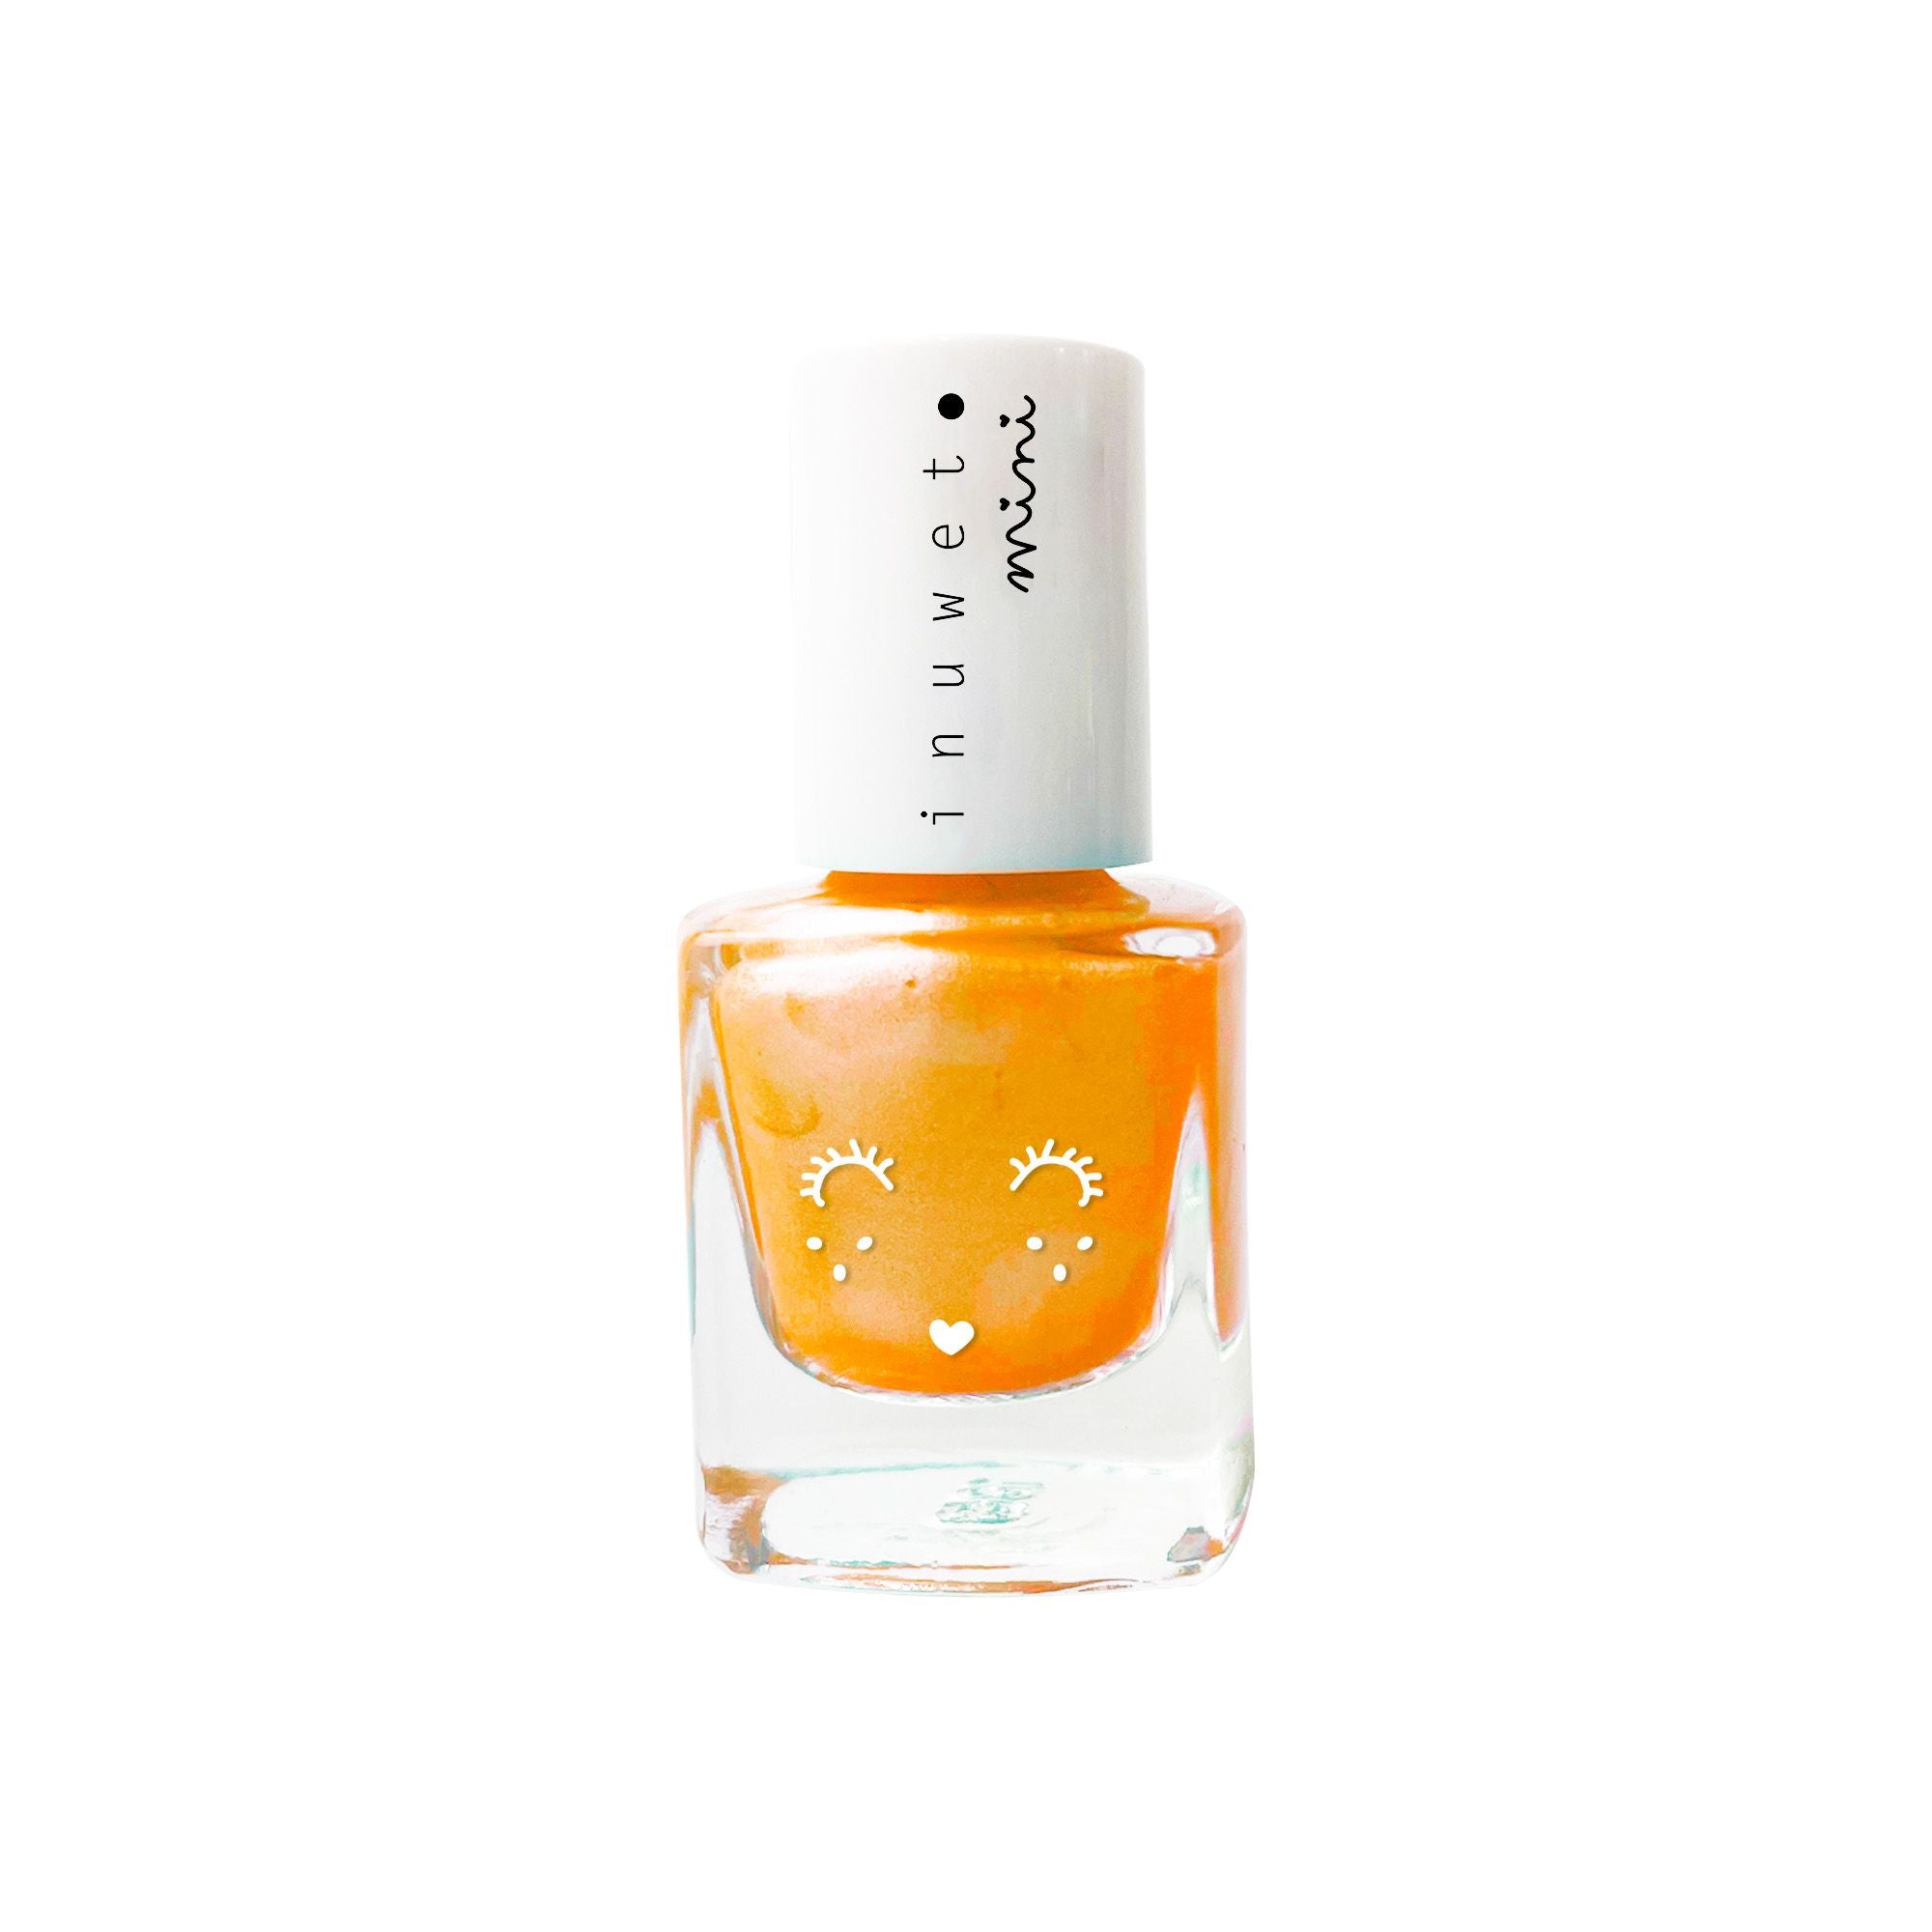 inuwet water based nail polish - fluoro orange mango